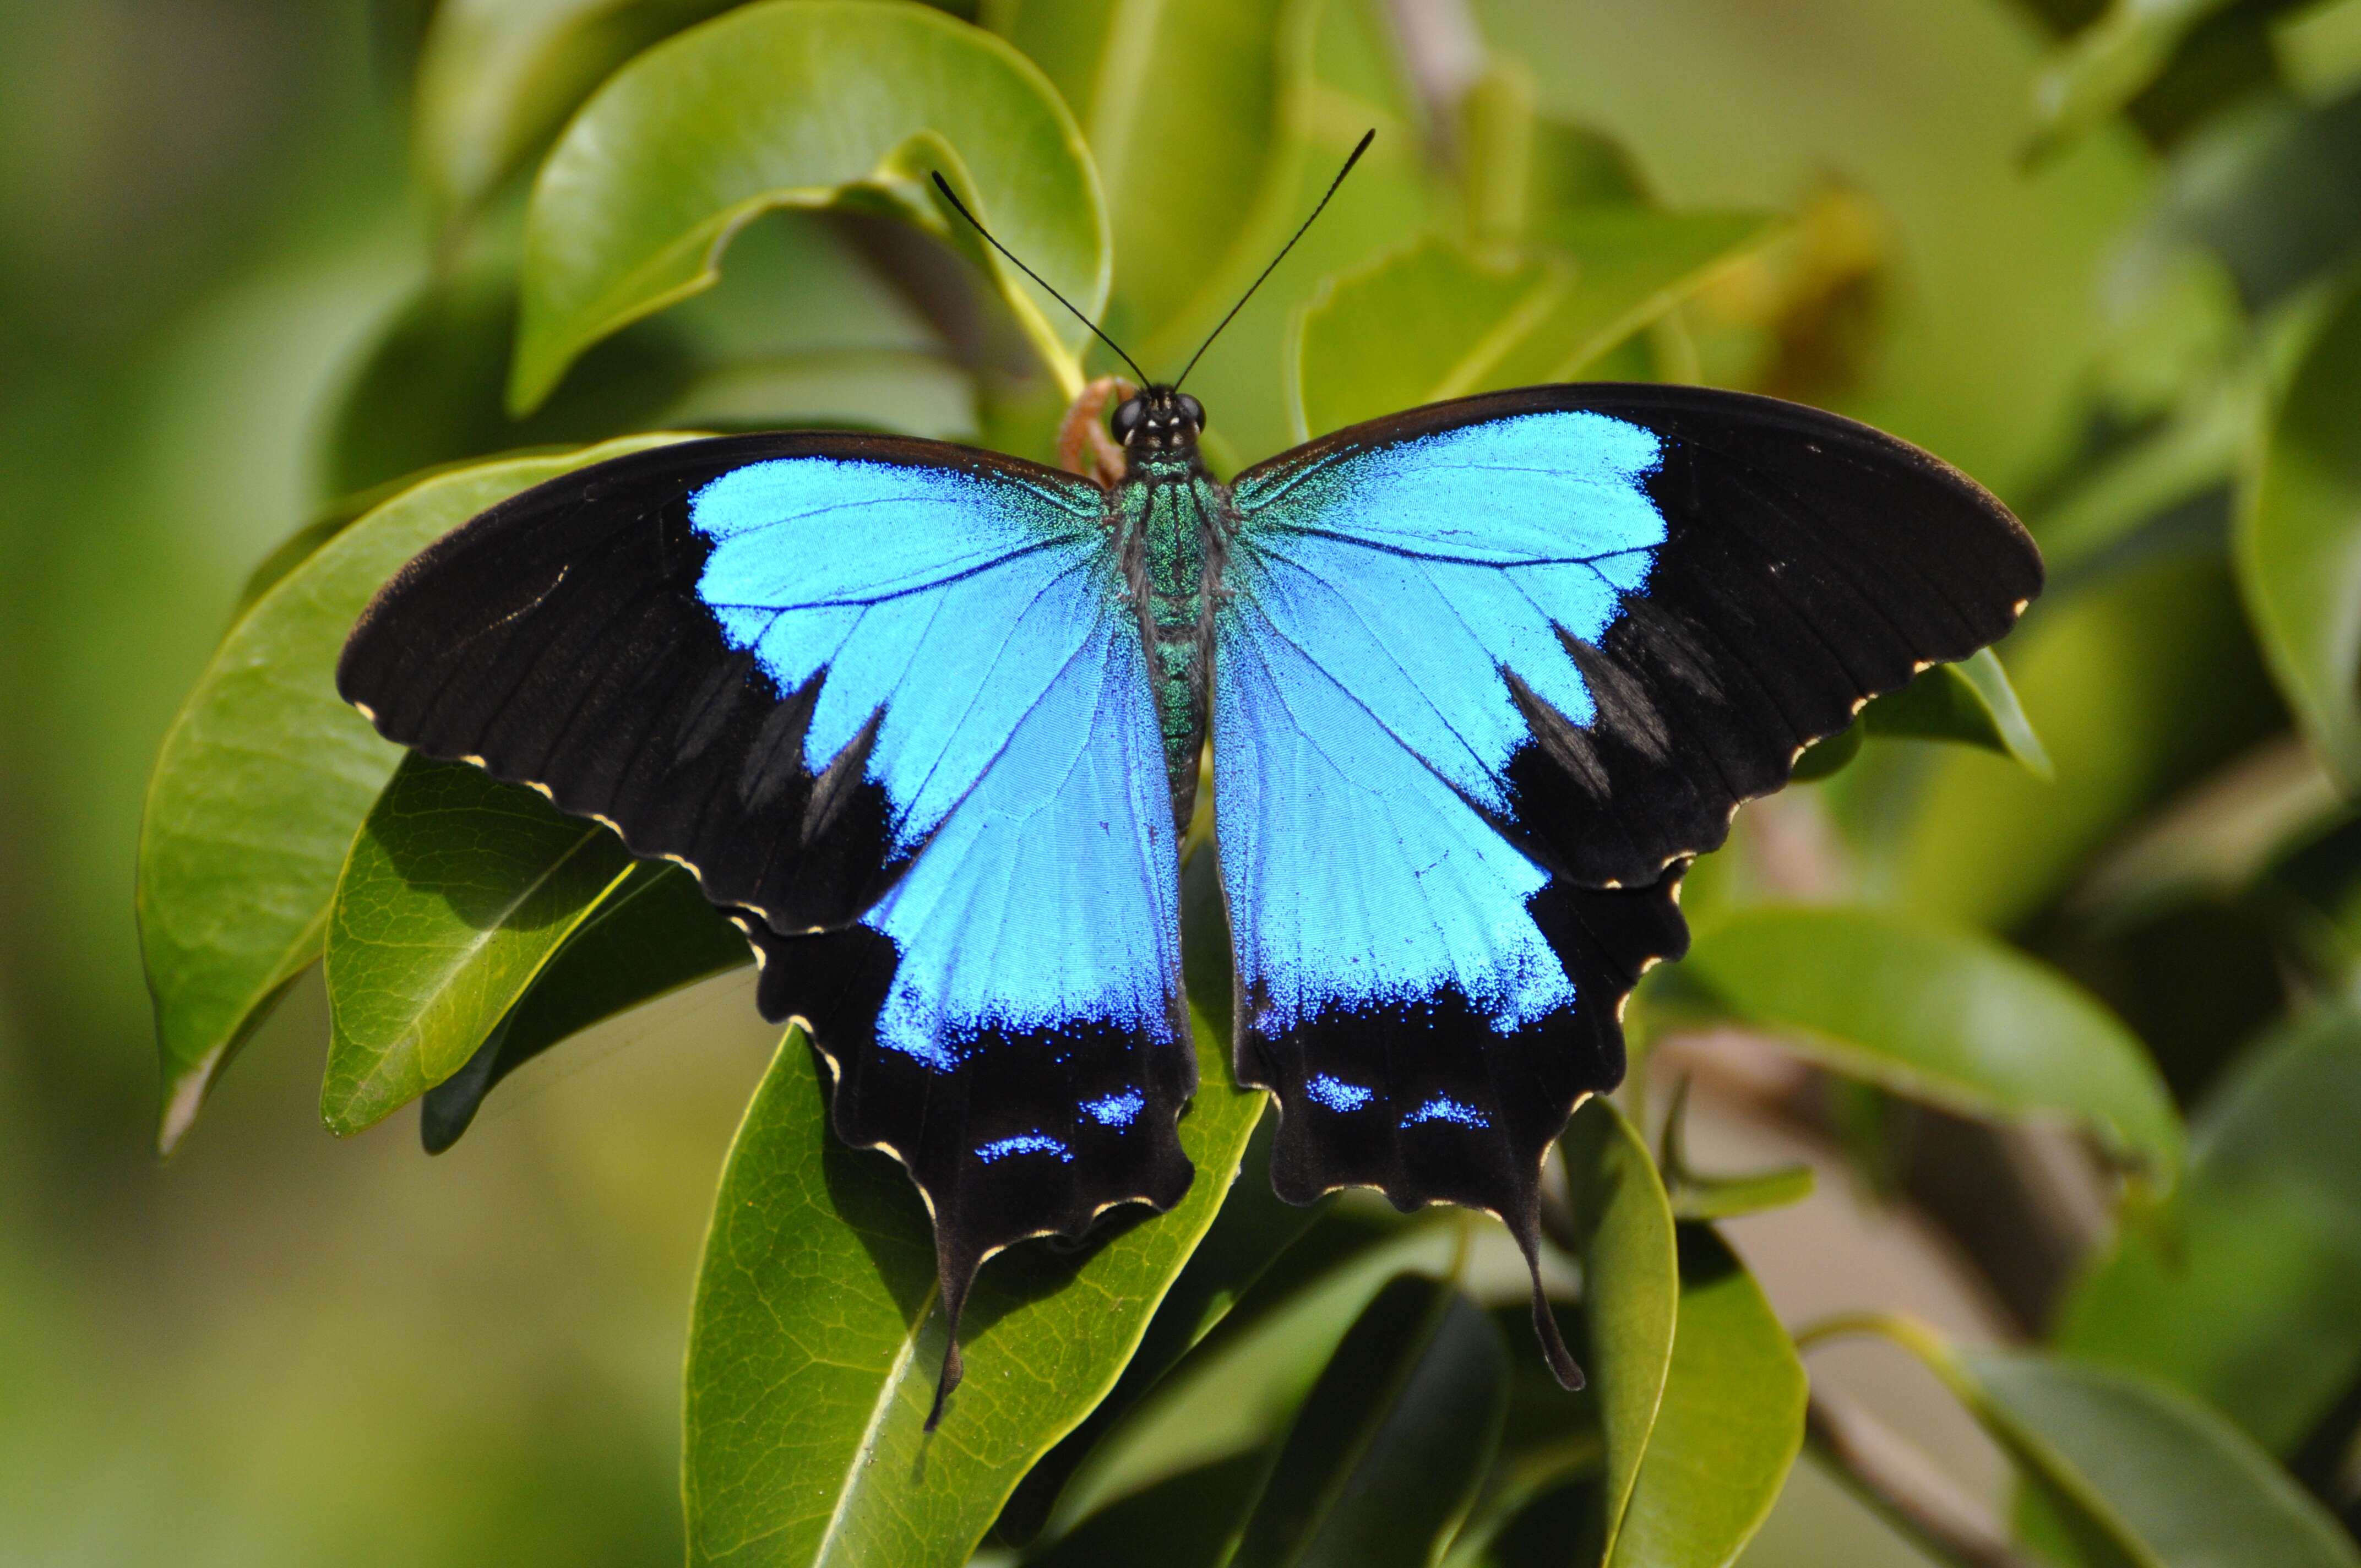 Image of Papilio montrouzieri Boisduval 1859